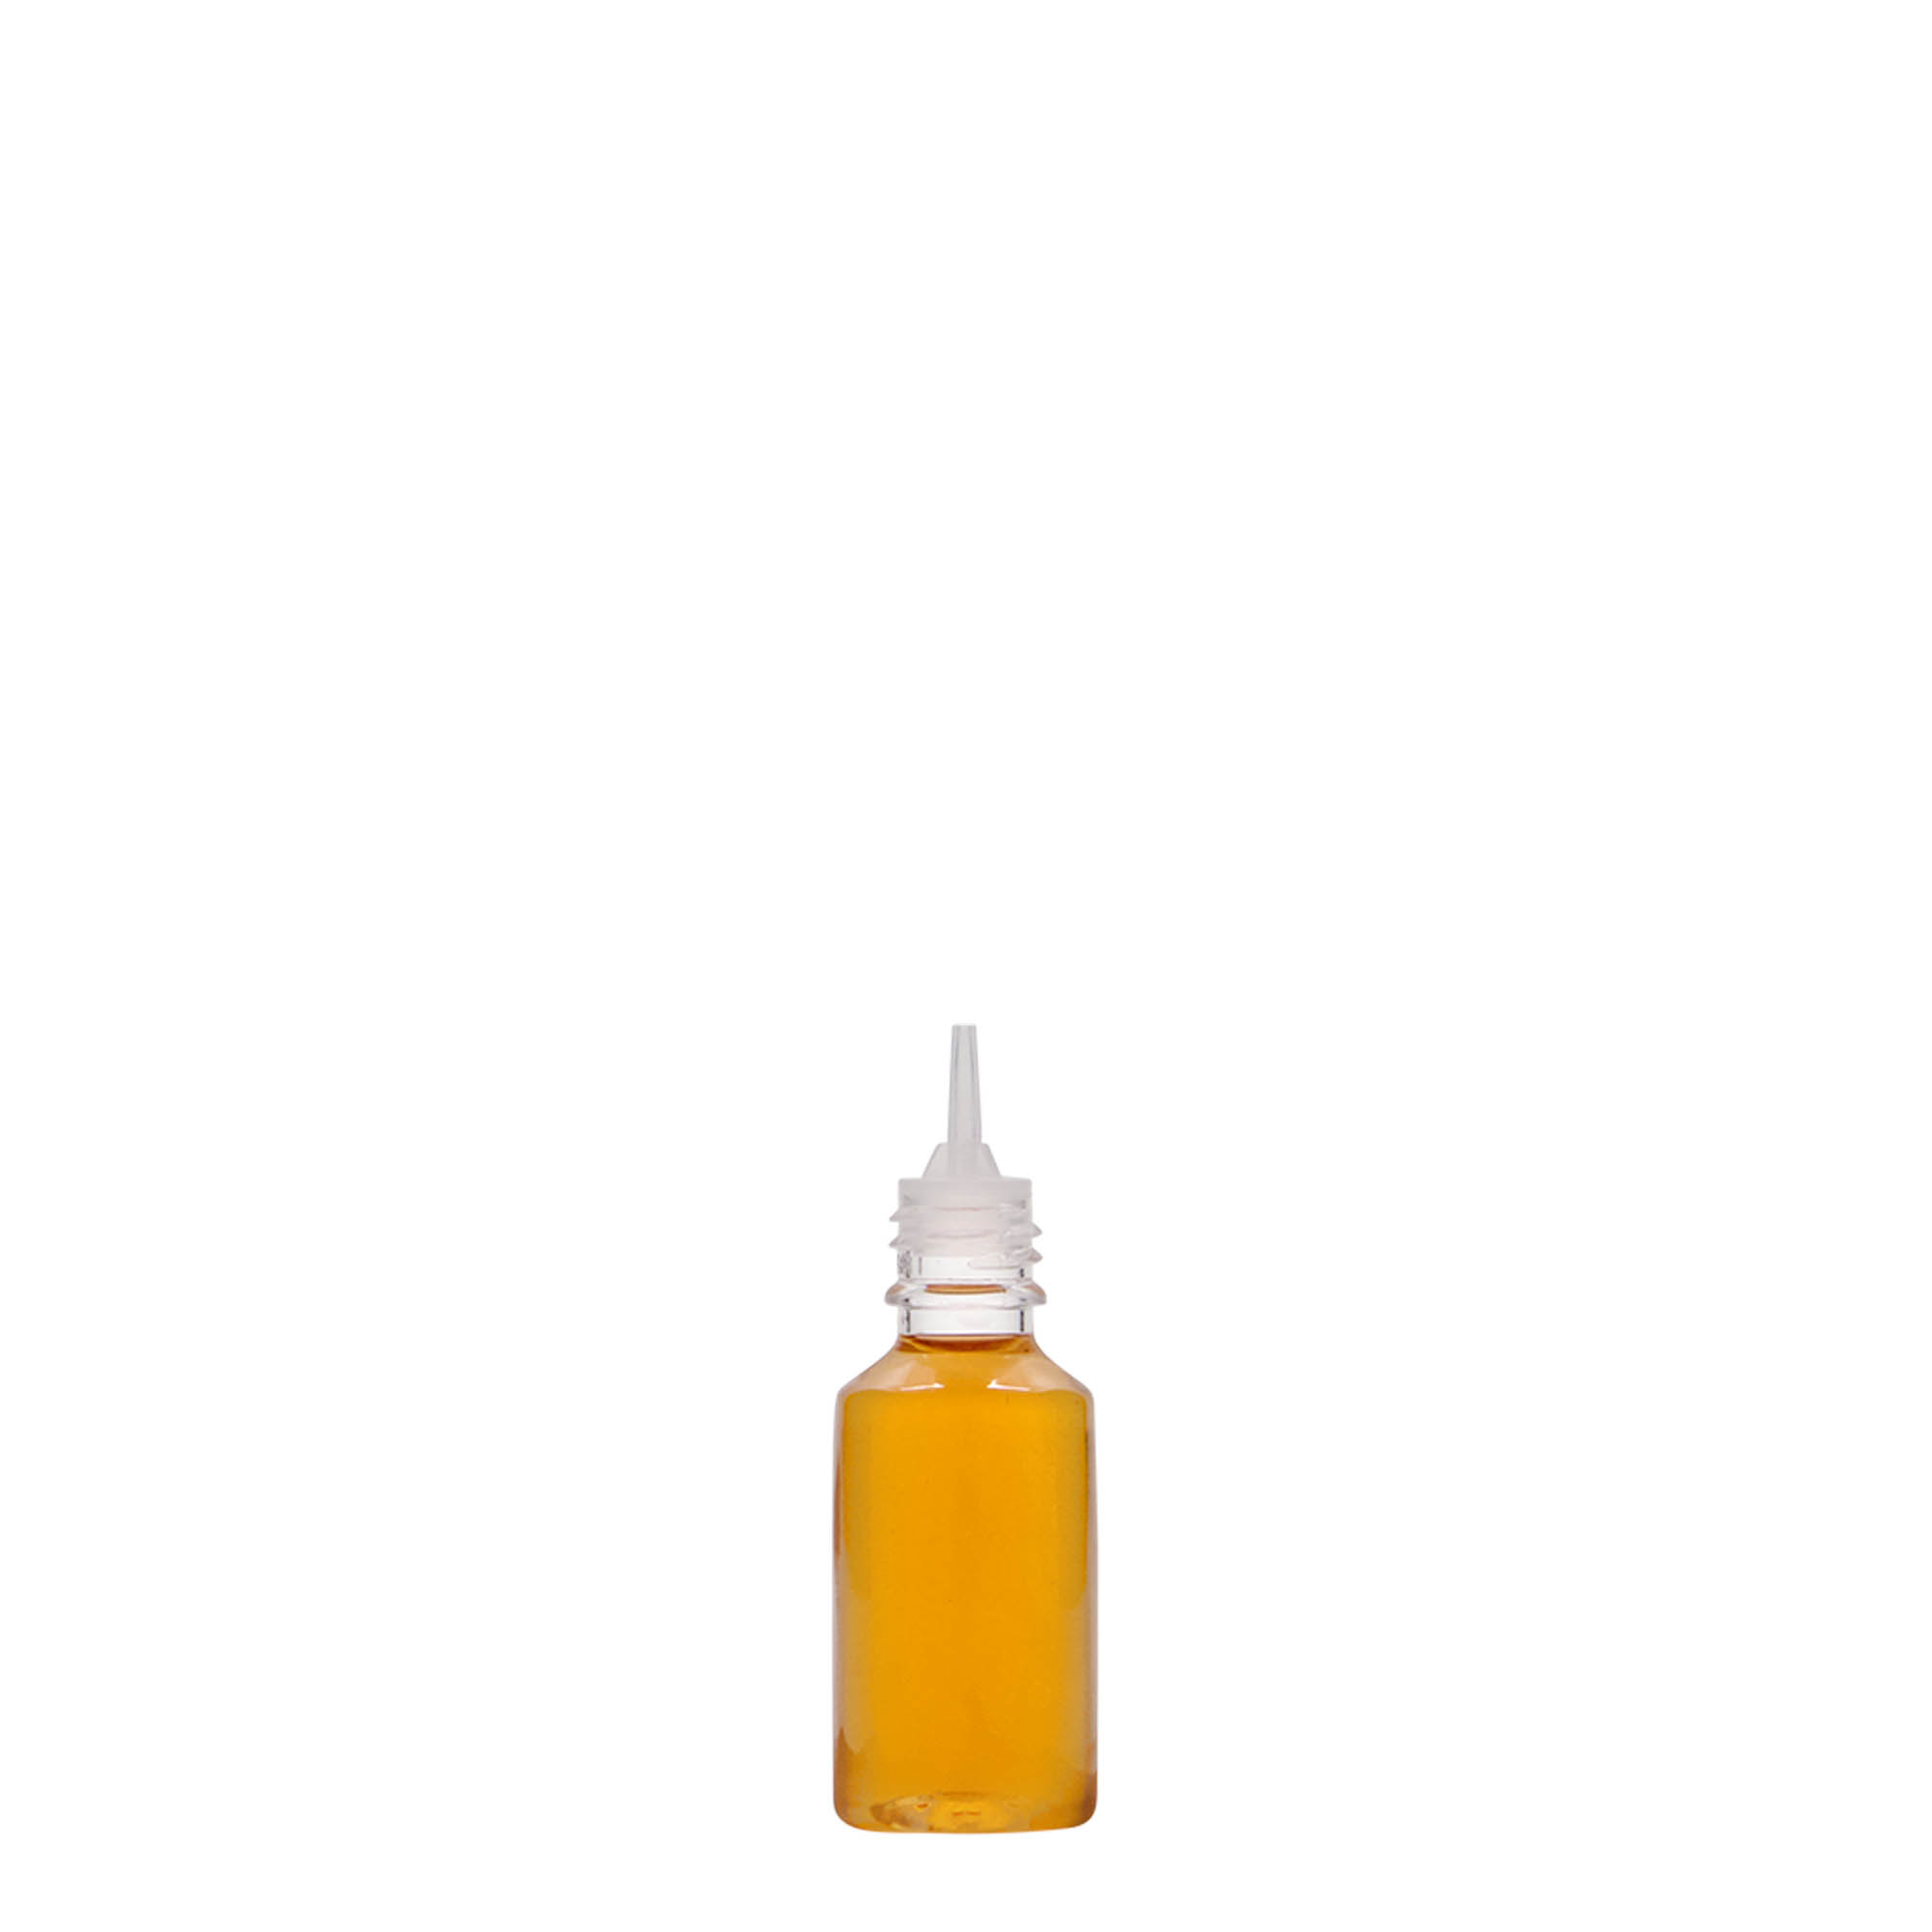 PET lahev 10 ml 'E-Liquid' s odtrhávacím kroužkem a dětskou pojistkou, plast, uzávěr: šroubovací uzávěr